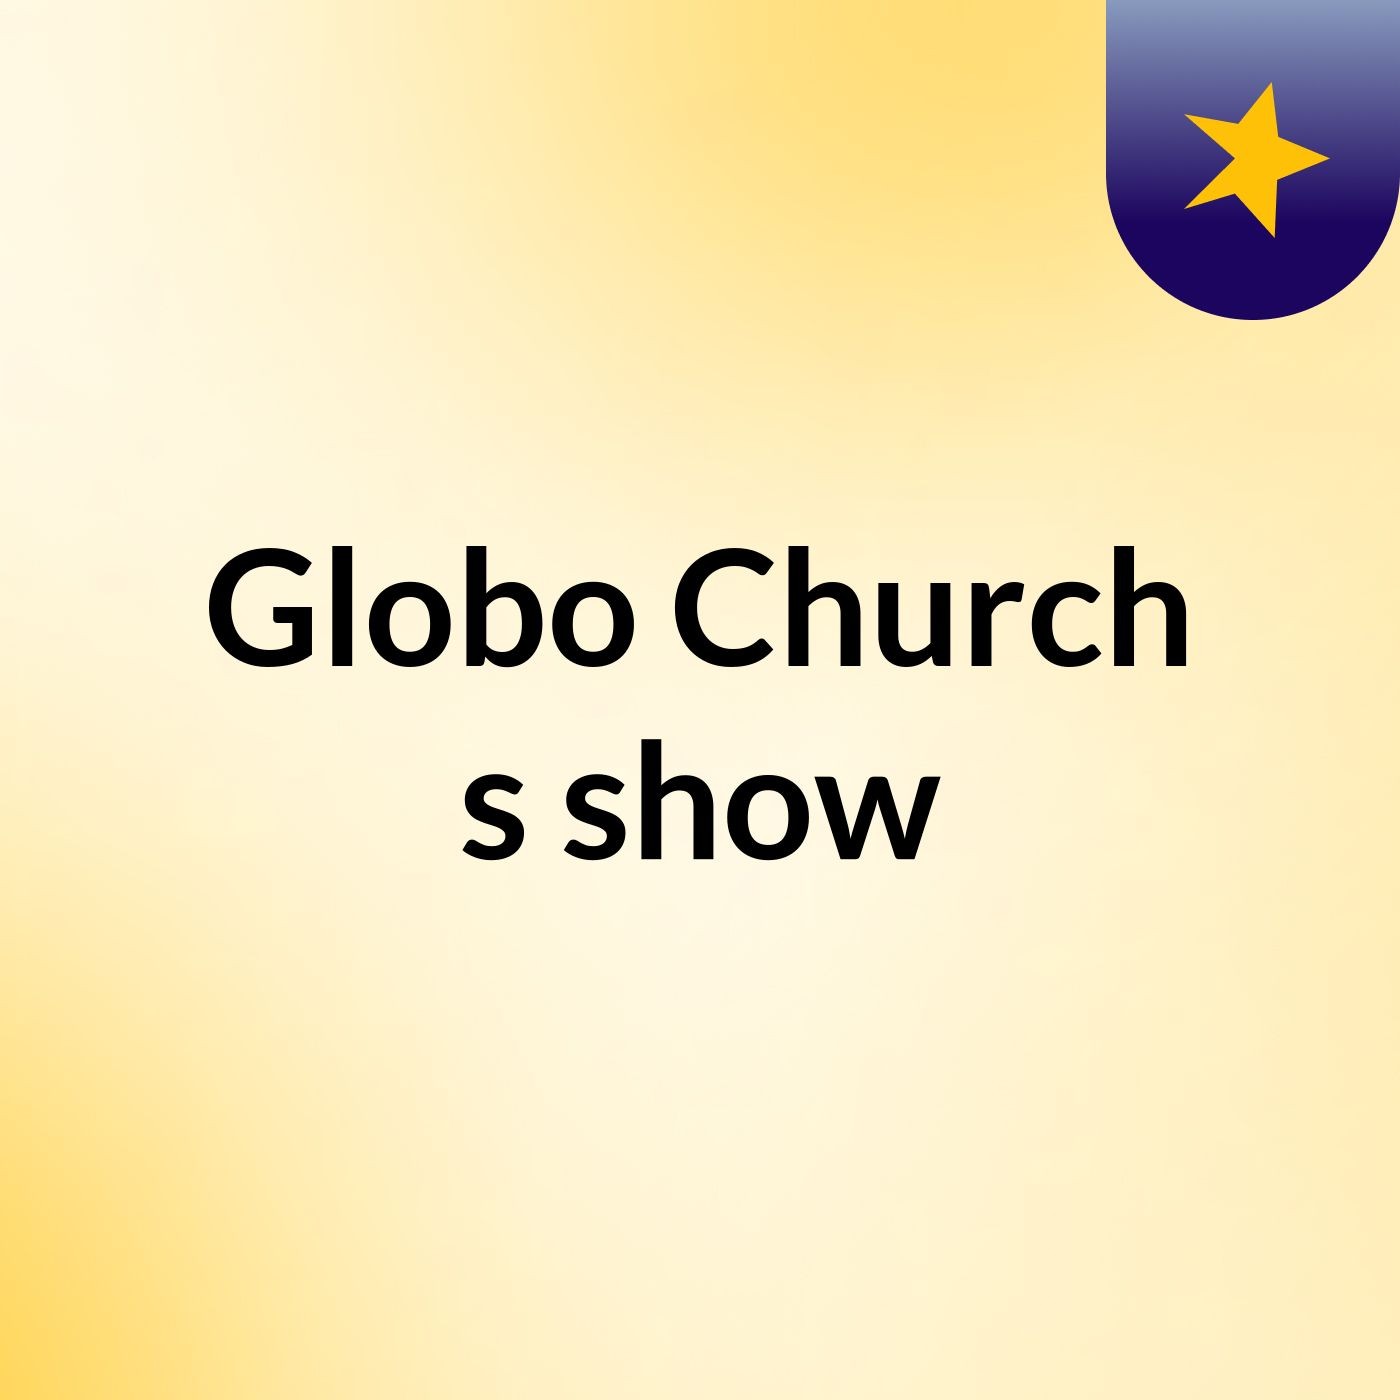 Globo Church's show